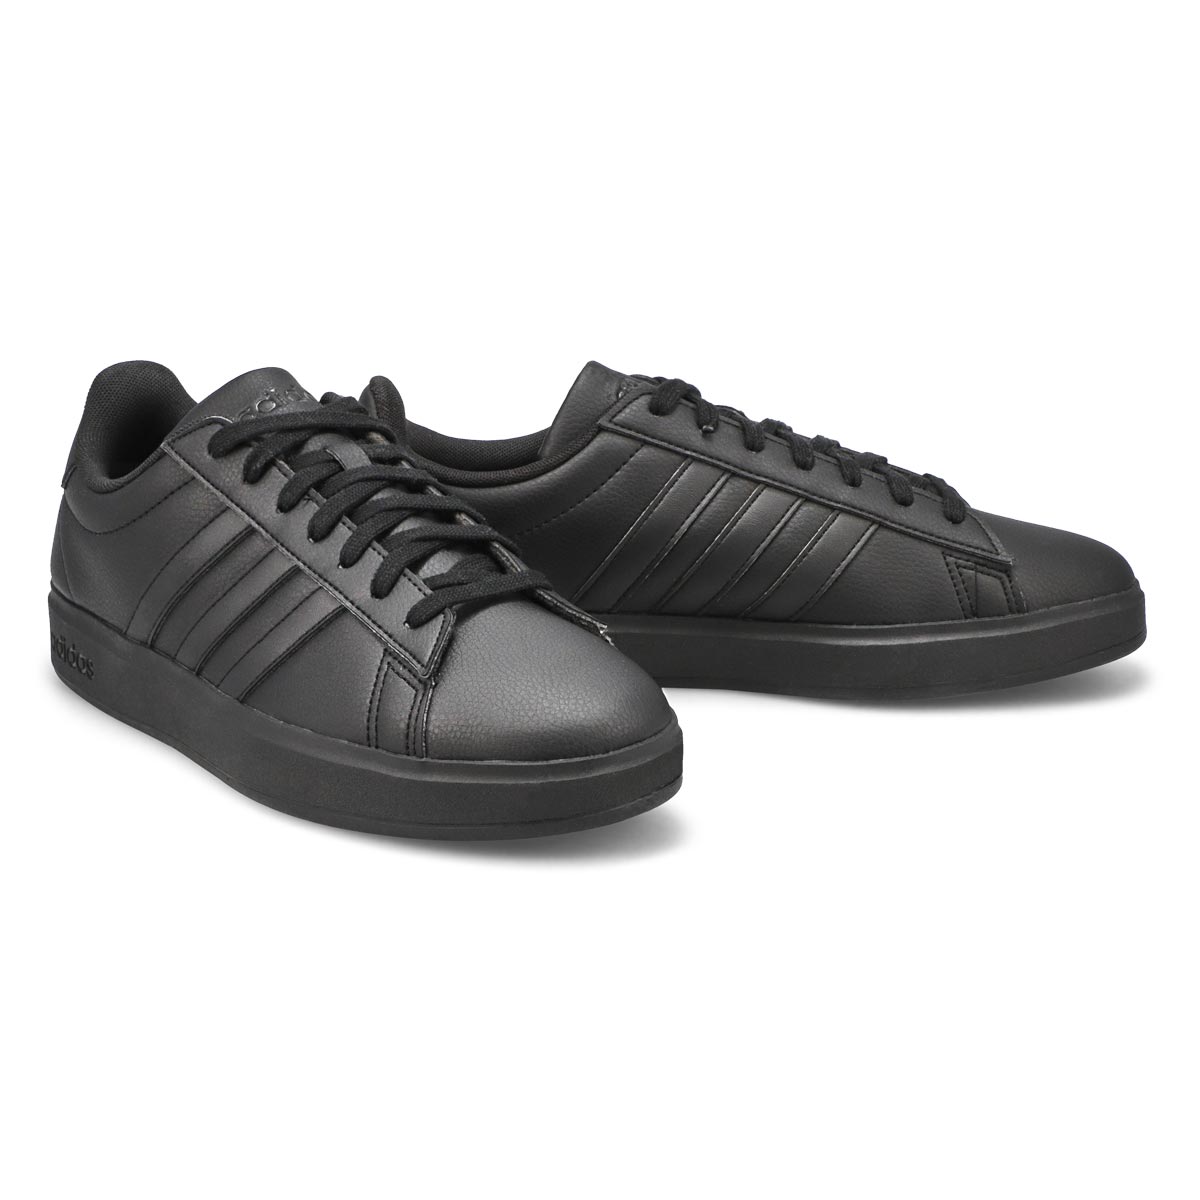 adidas Men's Grand Court Tennis Shoes, Core Black